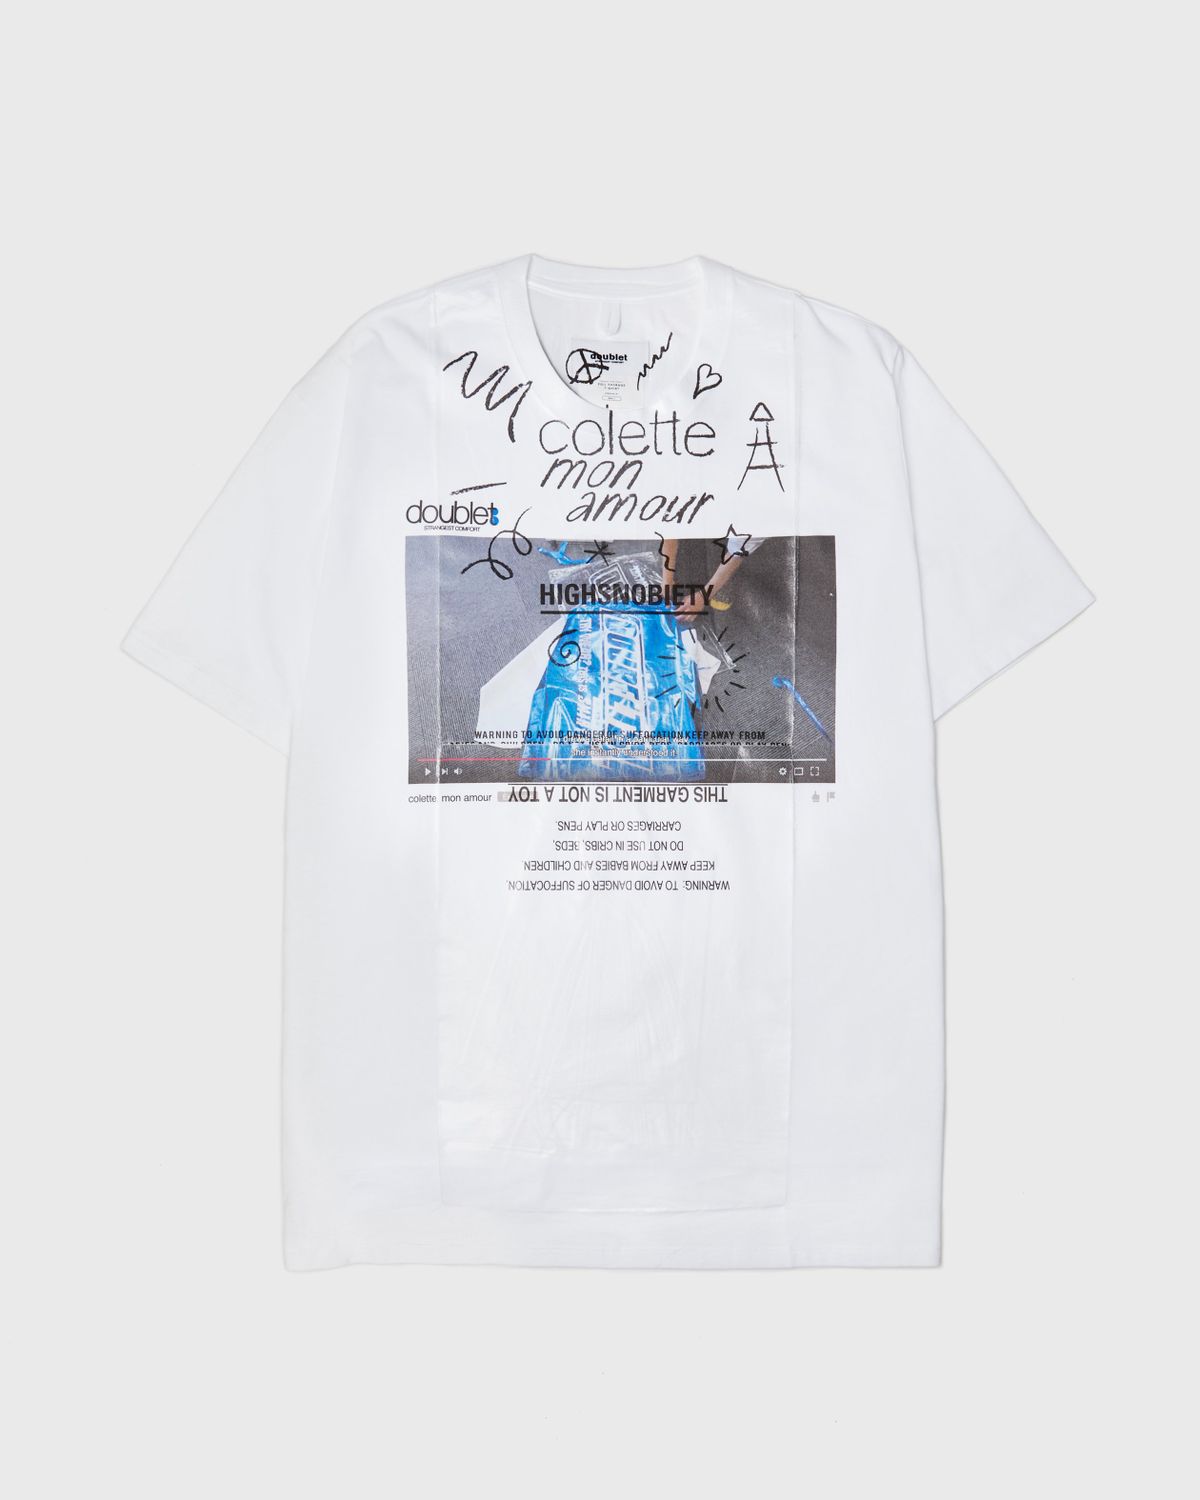 Colette Mon Amour – Doublet T-Shirt - T-Shirts - White - Image 1